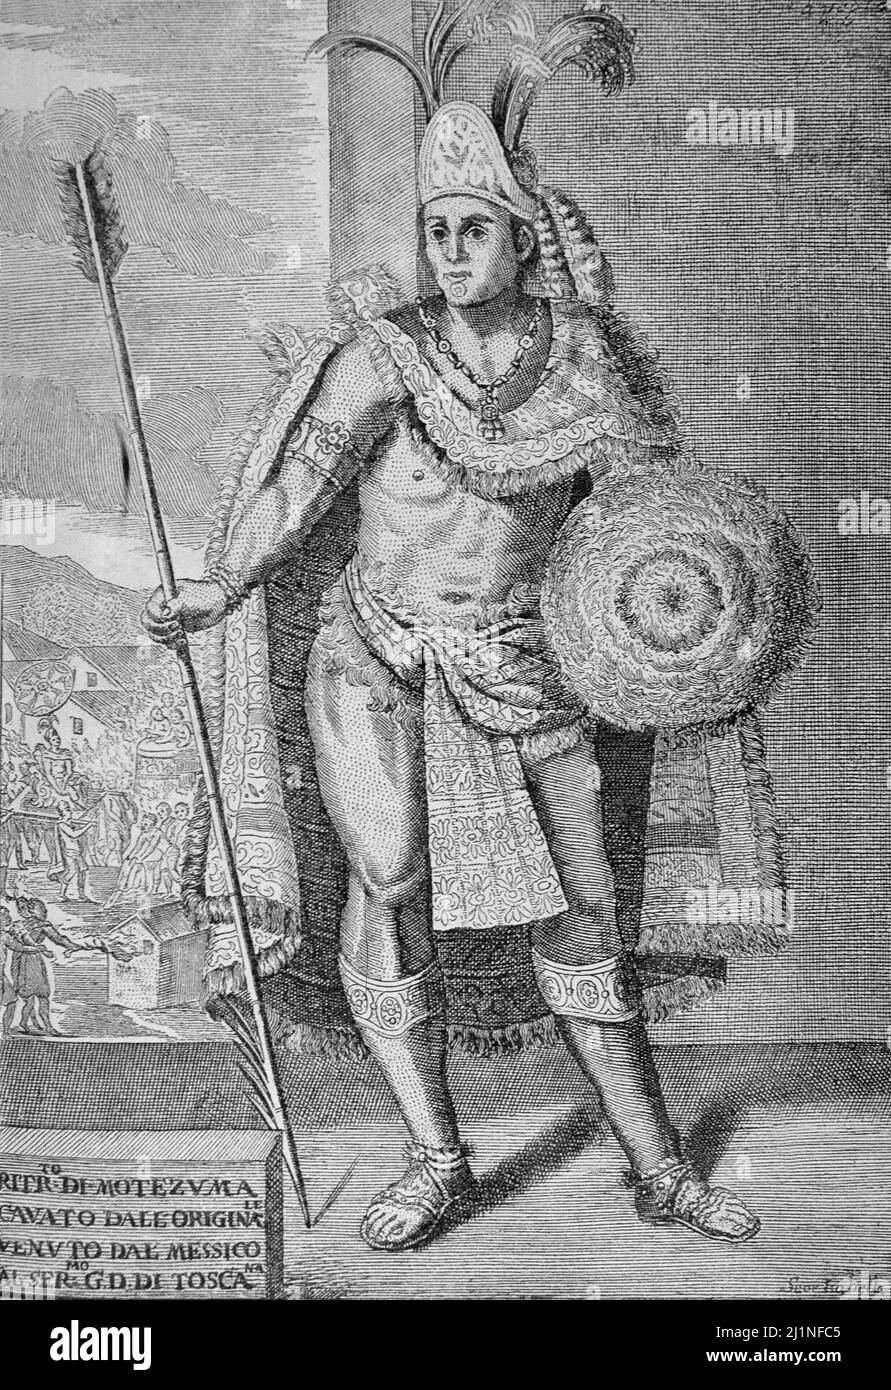 MOCTEZUMA I. EMPERADOR AZTECA ENTRE 1440-1469. GRABADO DE ' HISTORIA DE LA CONQUISTA DEL PERU' DE ANTONIO SOLIS. BIBLIOTECA NACIONAL. MADRID. Stock Photo